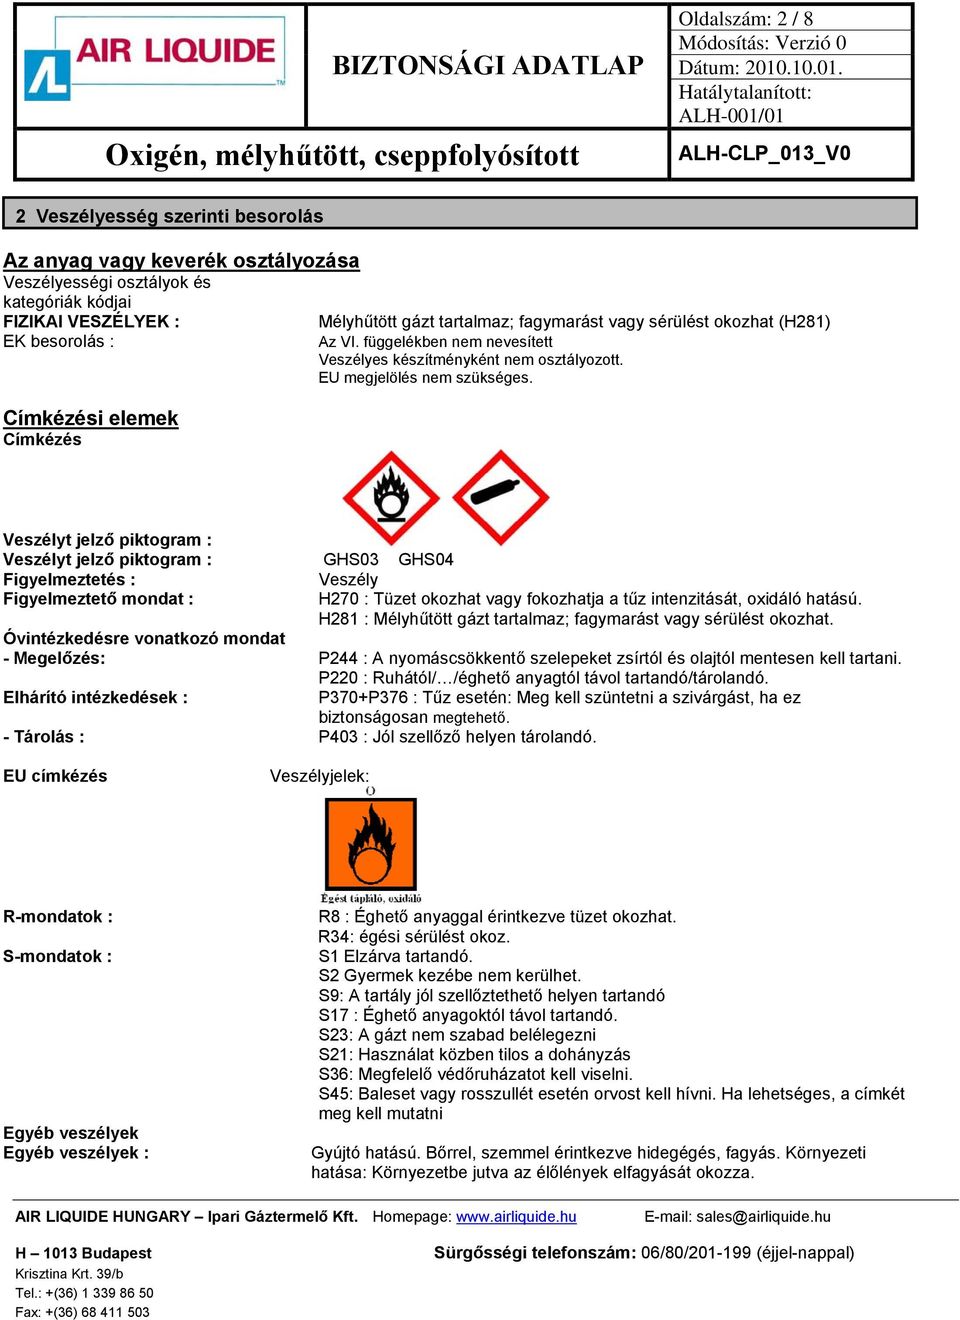 Veszélyt jelző piktogram : Veszélyt jelző piktogram : GHS03 GHS04 Figyelmeztetés : Veszély Figyelmeztető mondat : H270 : Tüzet okozhat vagy fokozhatja a tűz intenzitását, oxidáló hatású.